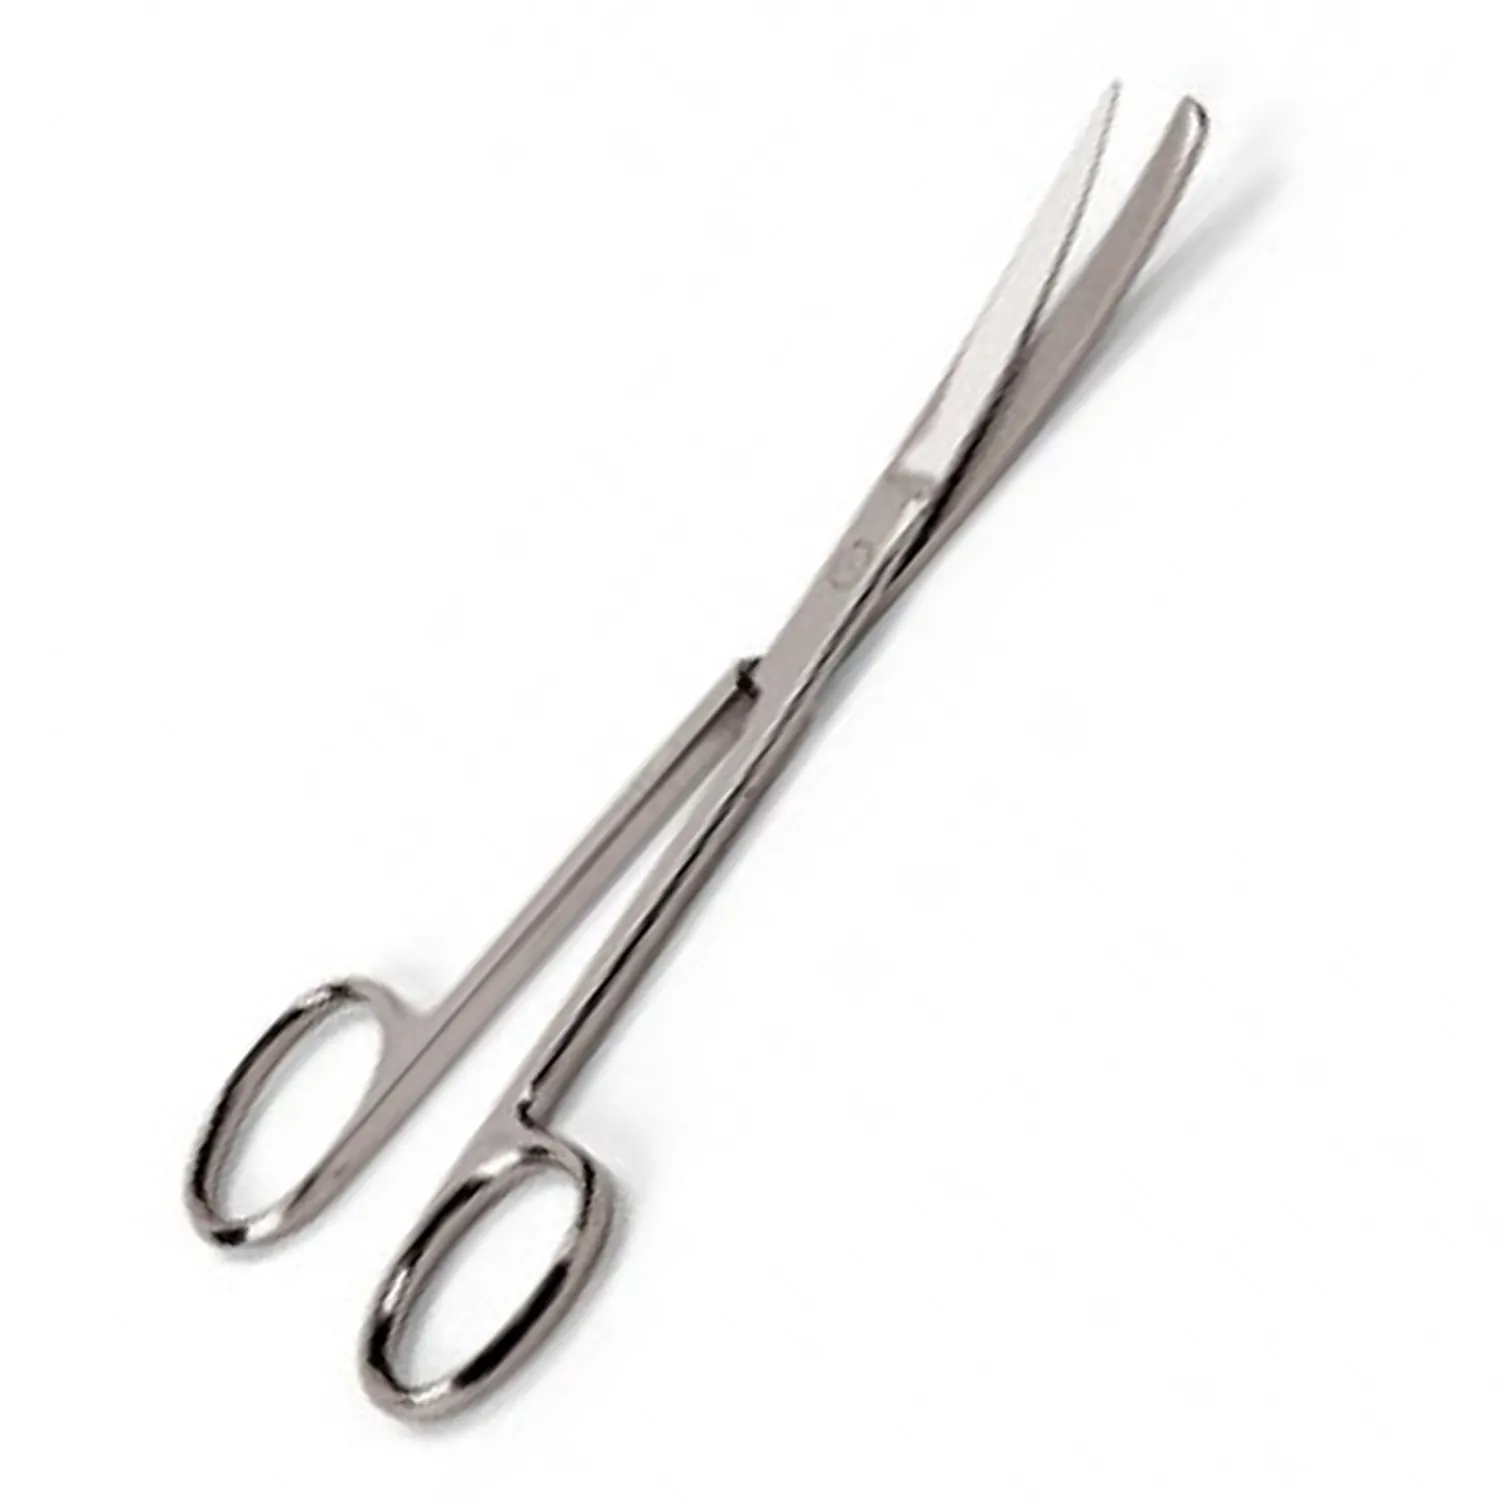 Prezzo di vendita di alta qualità in acciaio inox strumento per il funzionamento nomi tipi di forbici chirurgiche